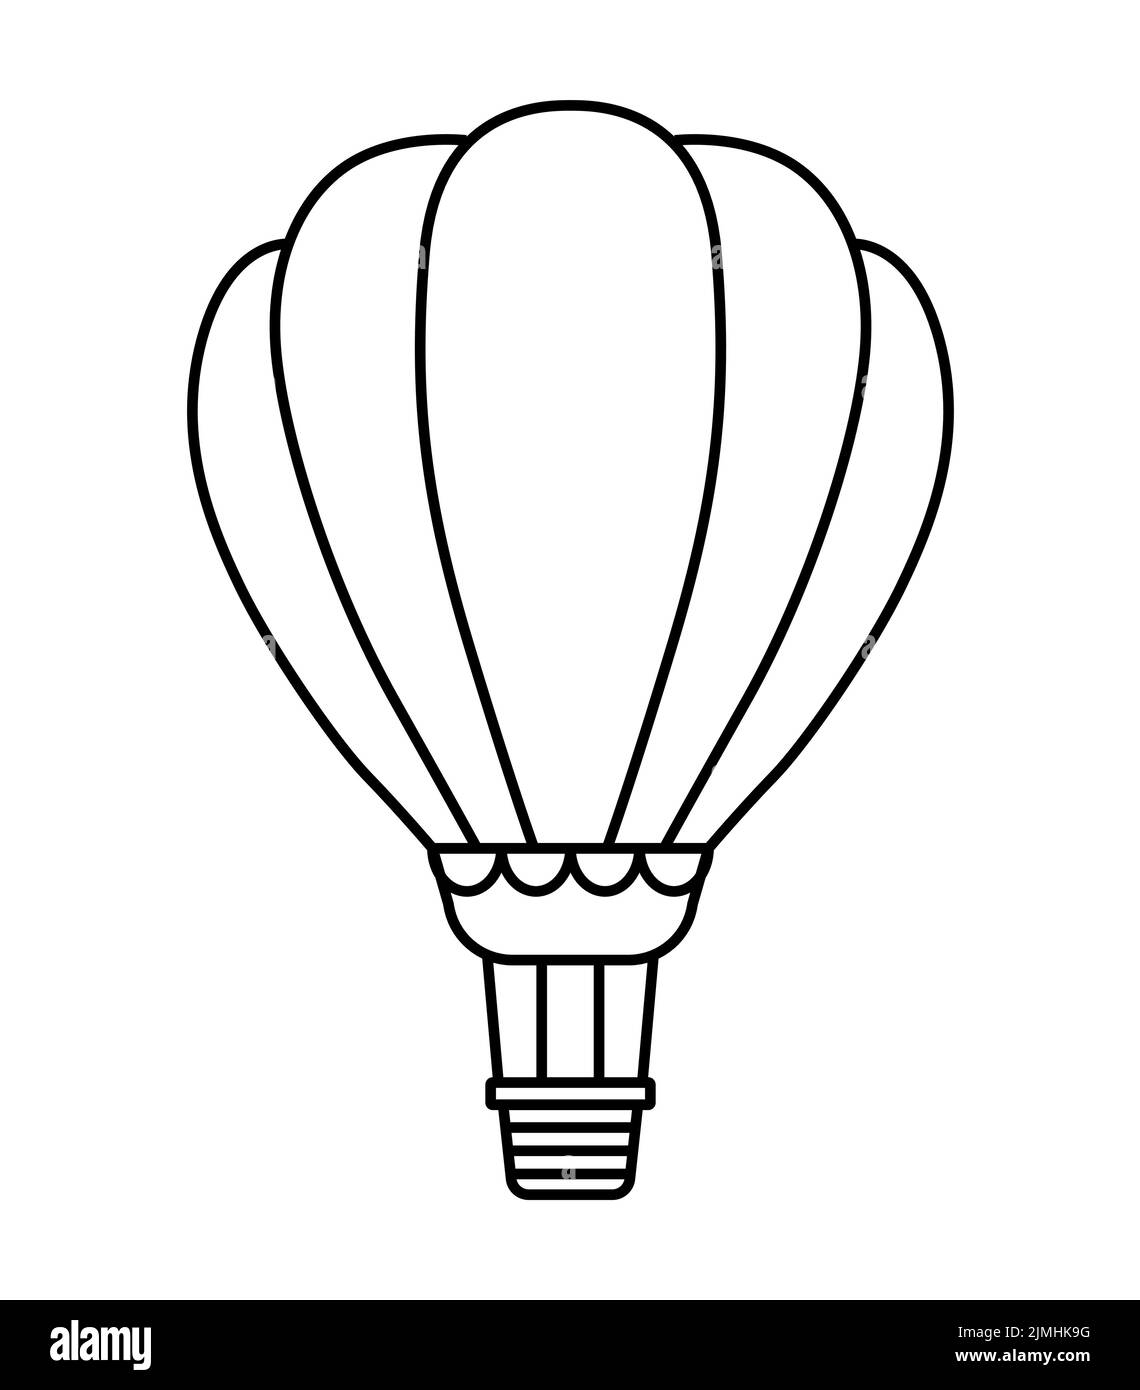 Icono de dibujo de línea de globo aerostático Ilustración del Vector